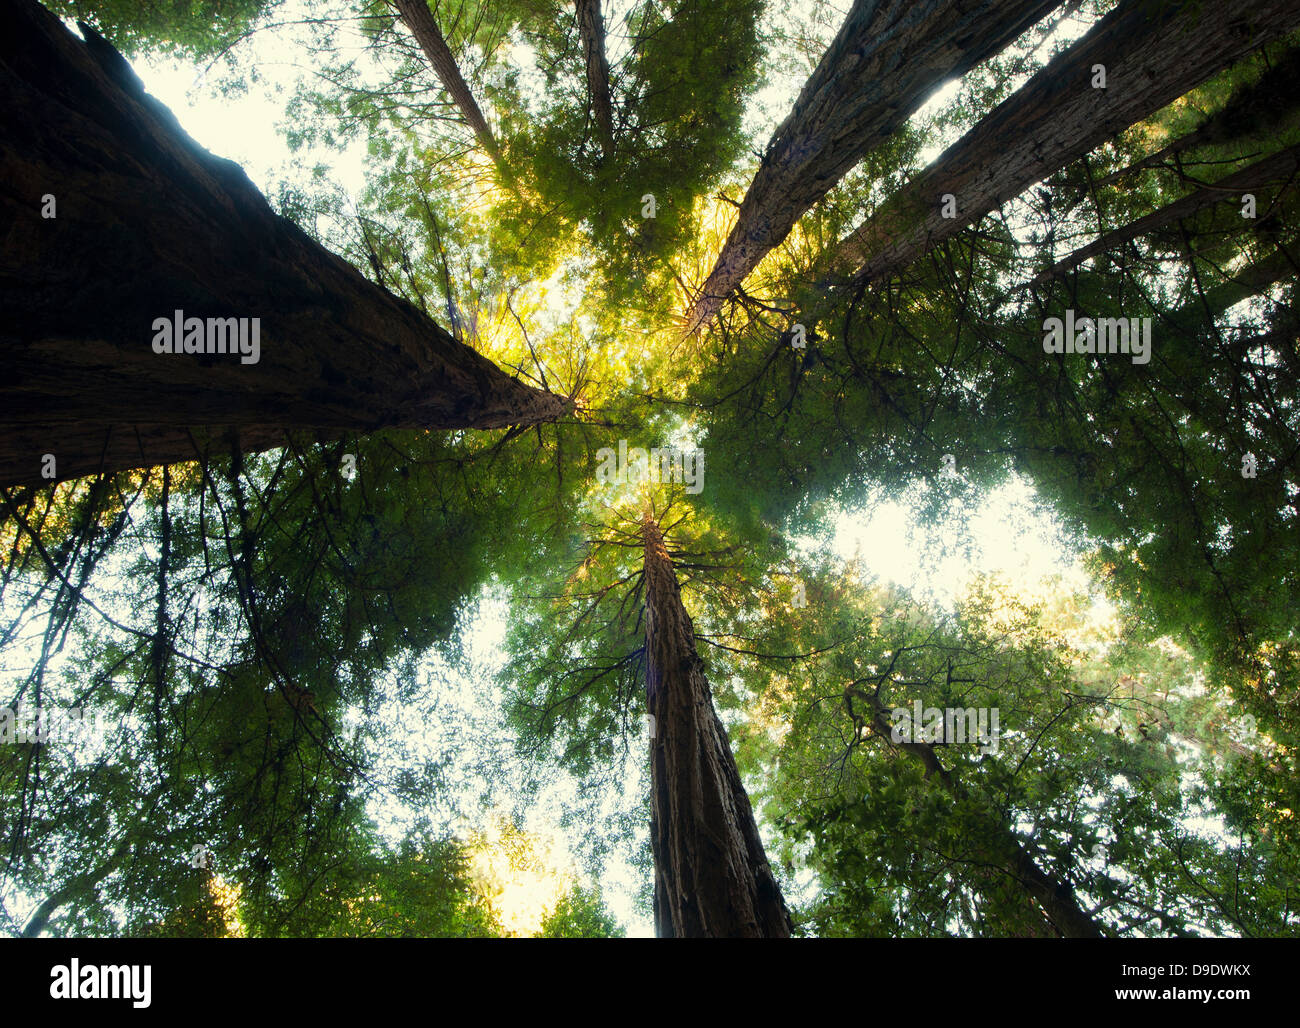 Giant Sequoia, California, USA Stock Photo